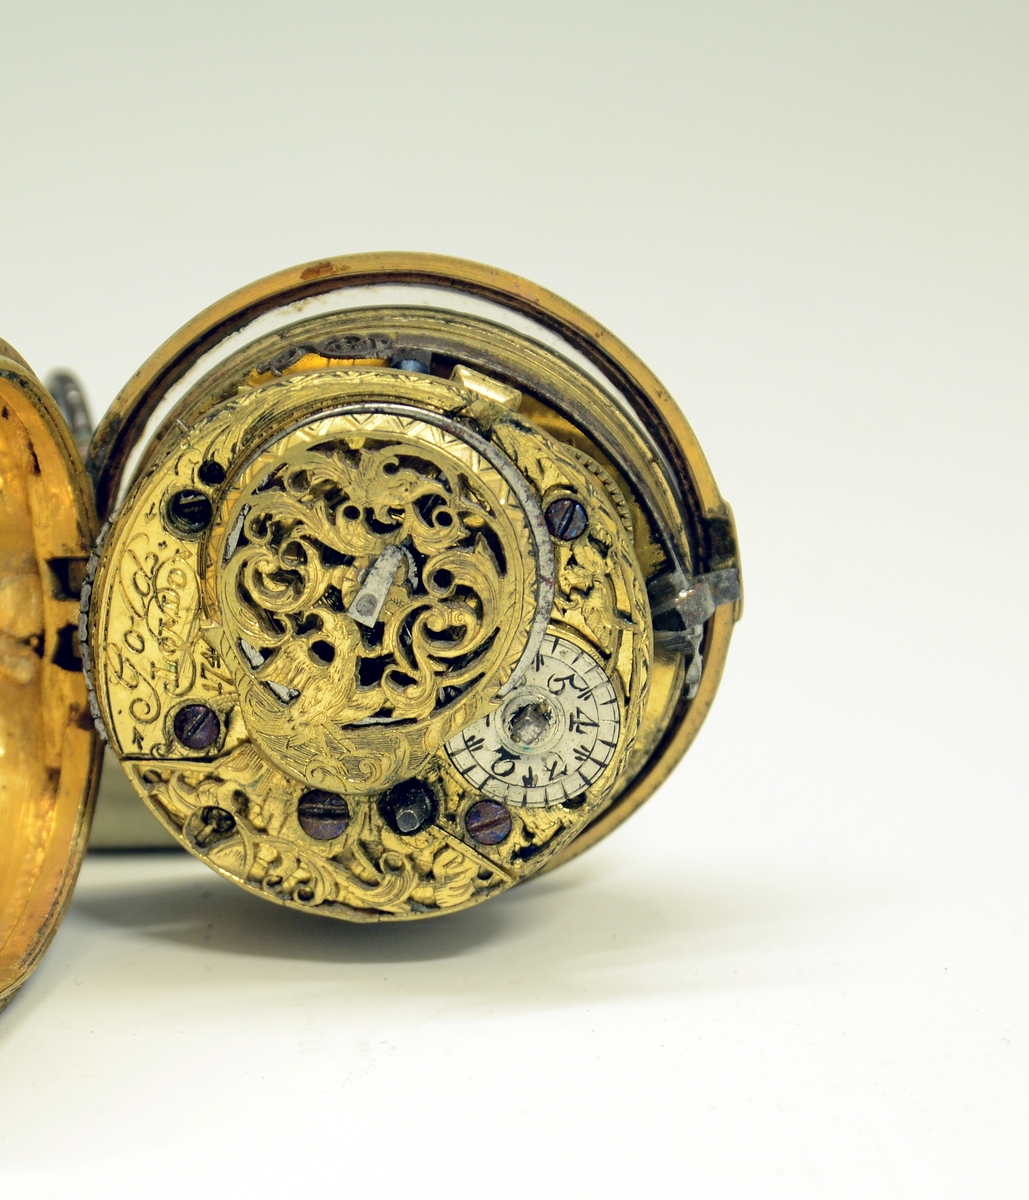 Fra protokollen: Lommeur i kasse av messing, indre kasse forgyldt, umerket plate og dæksel gjennembrutt og gravert. Merket: Gold, London 1744.